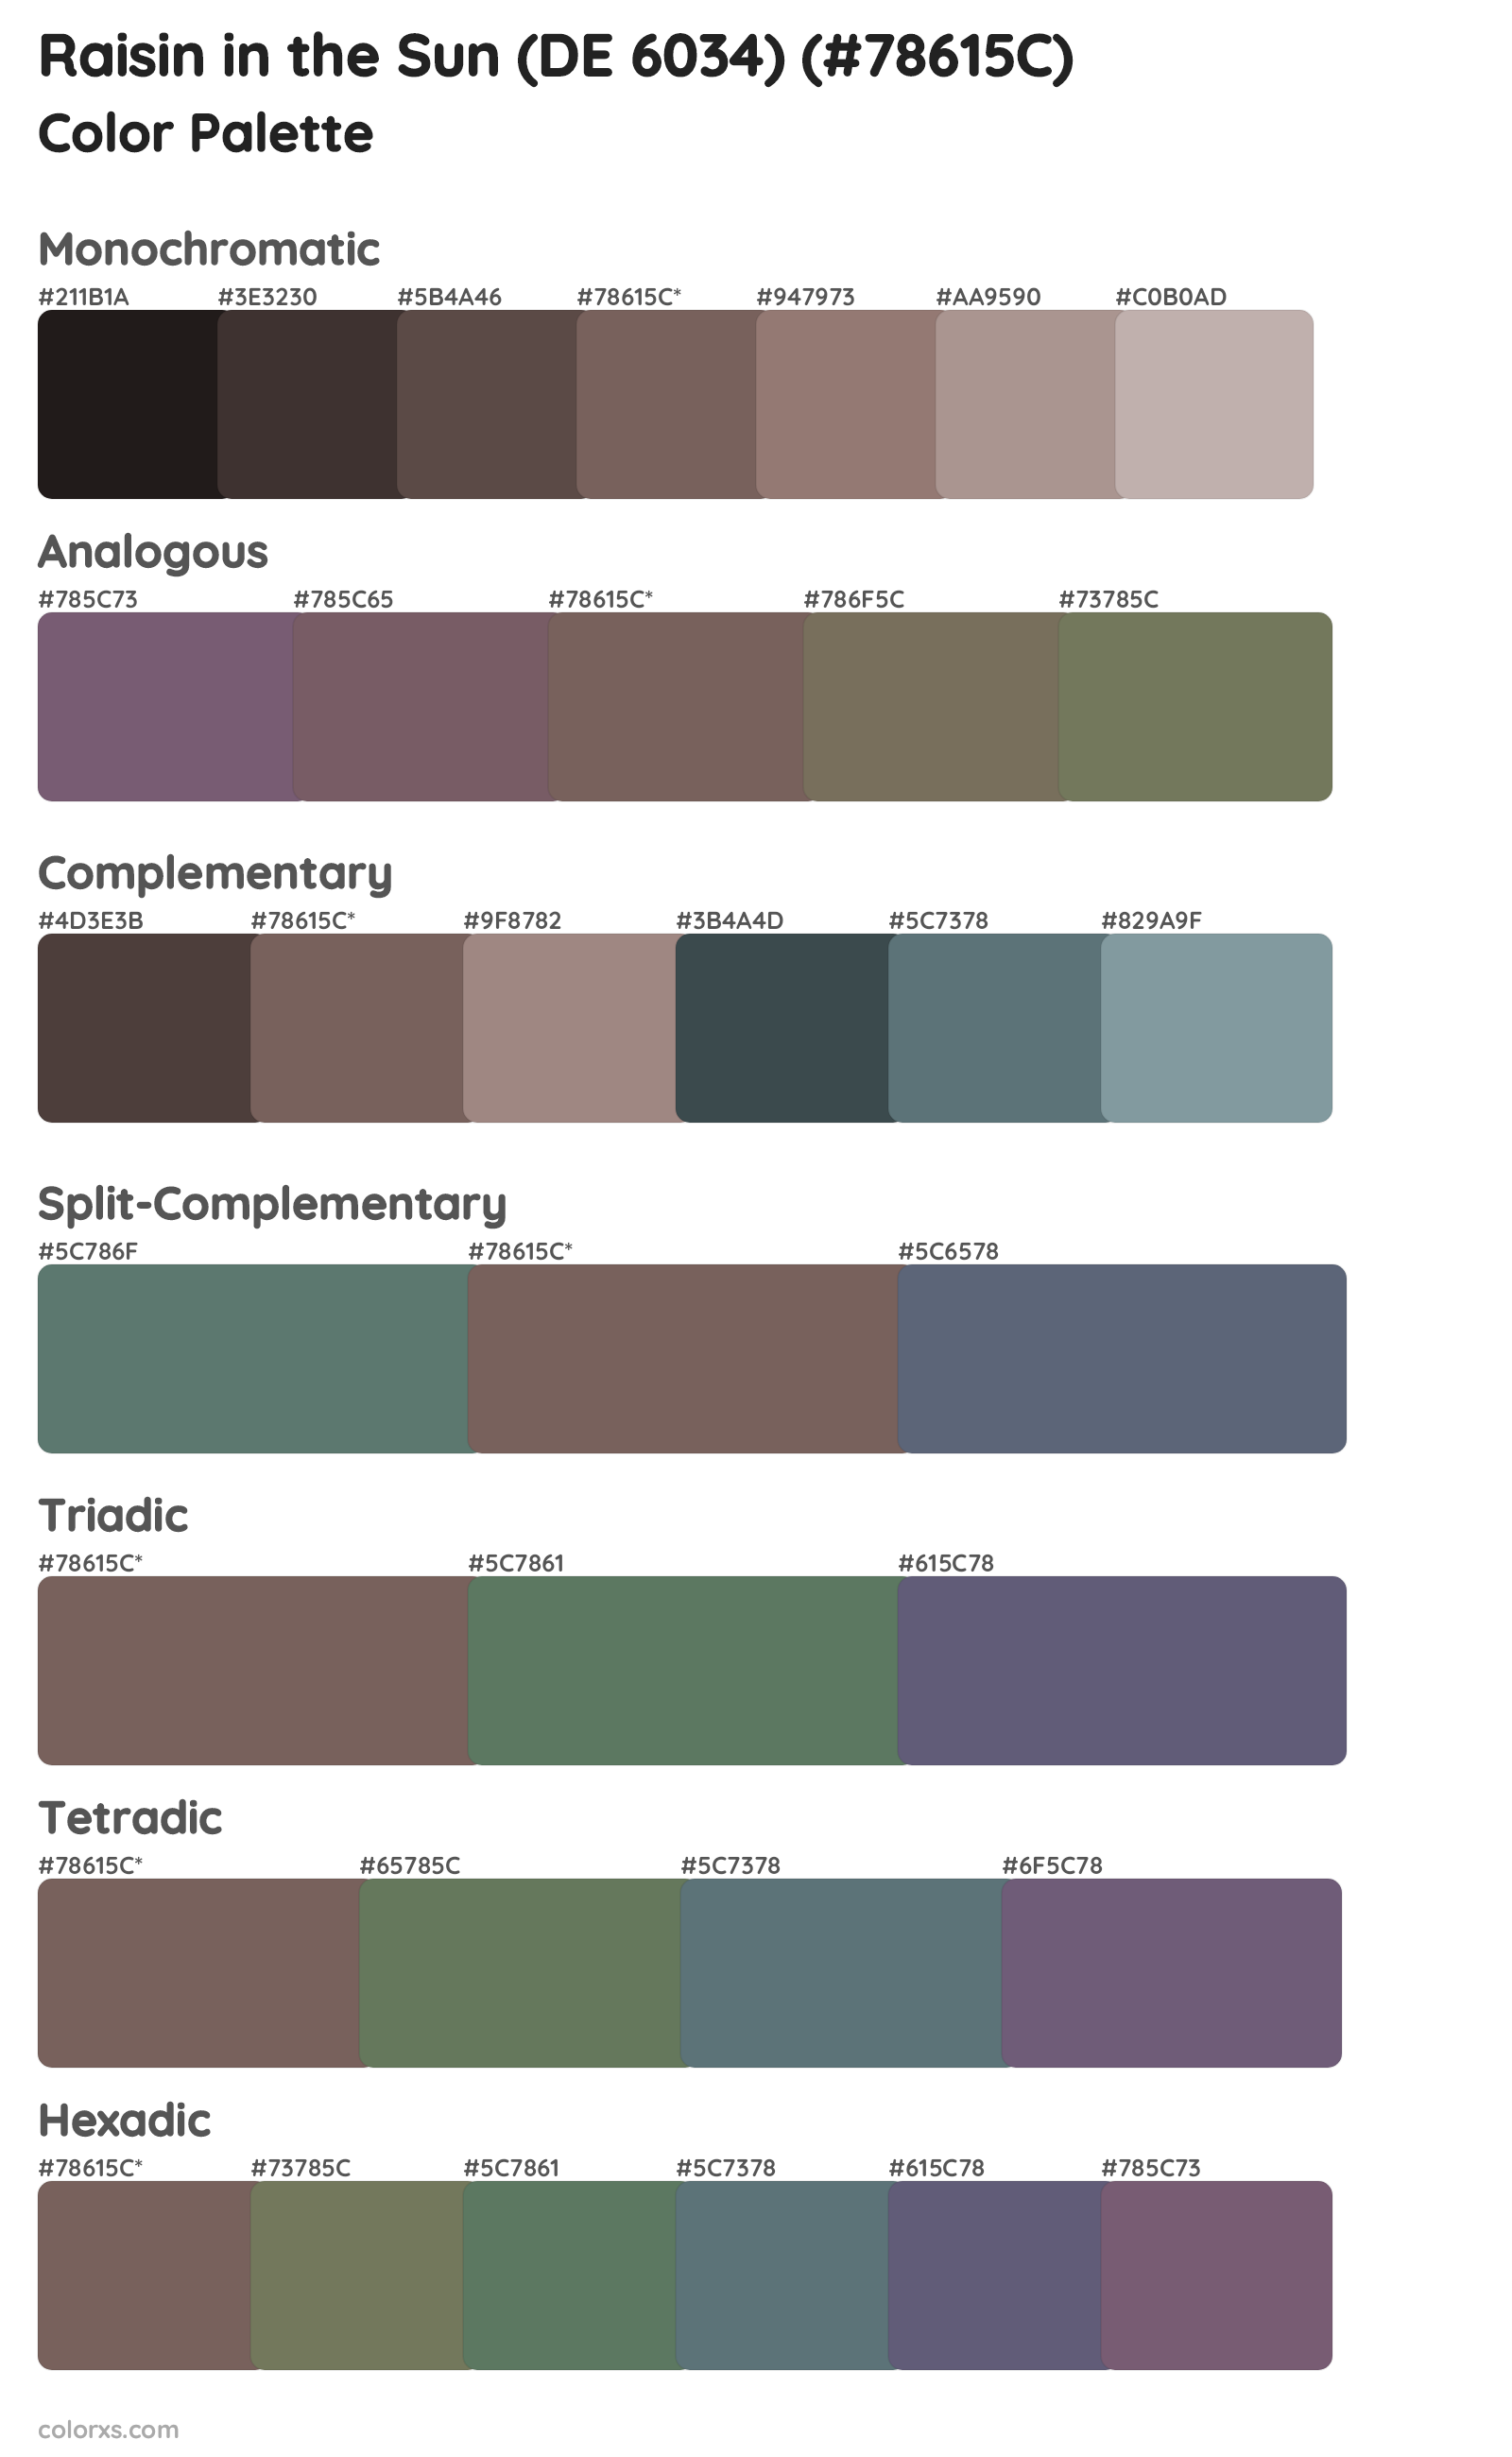 Raisin in the Sun (DE 6034) Color Scheme Palettes